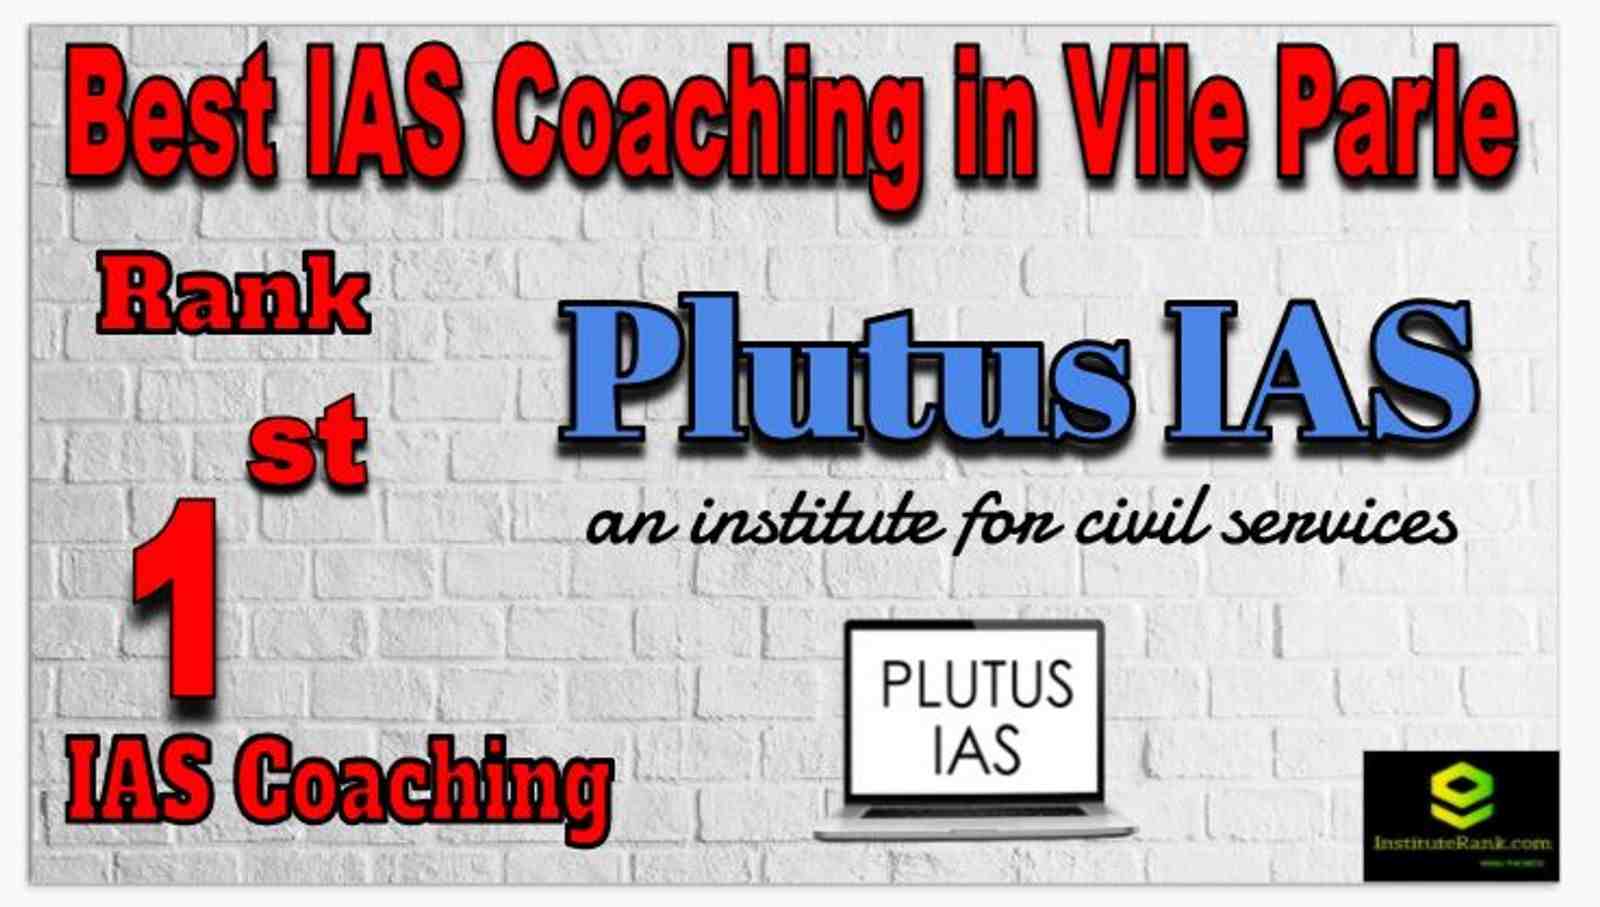 Rank 1 Best IAS Coaching in Vile Parle